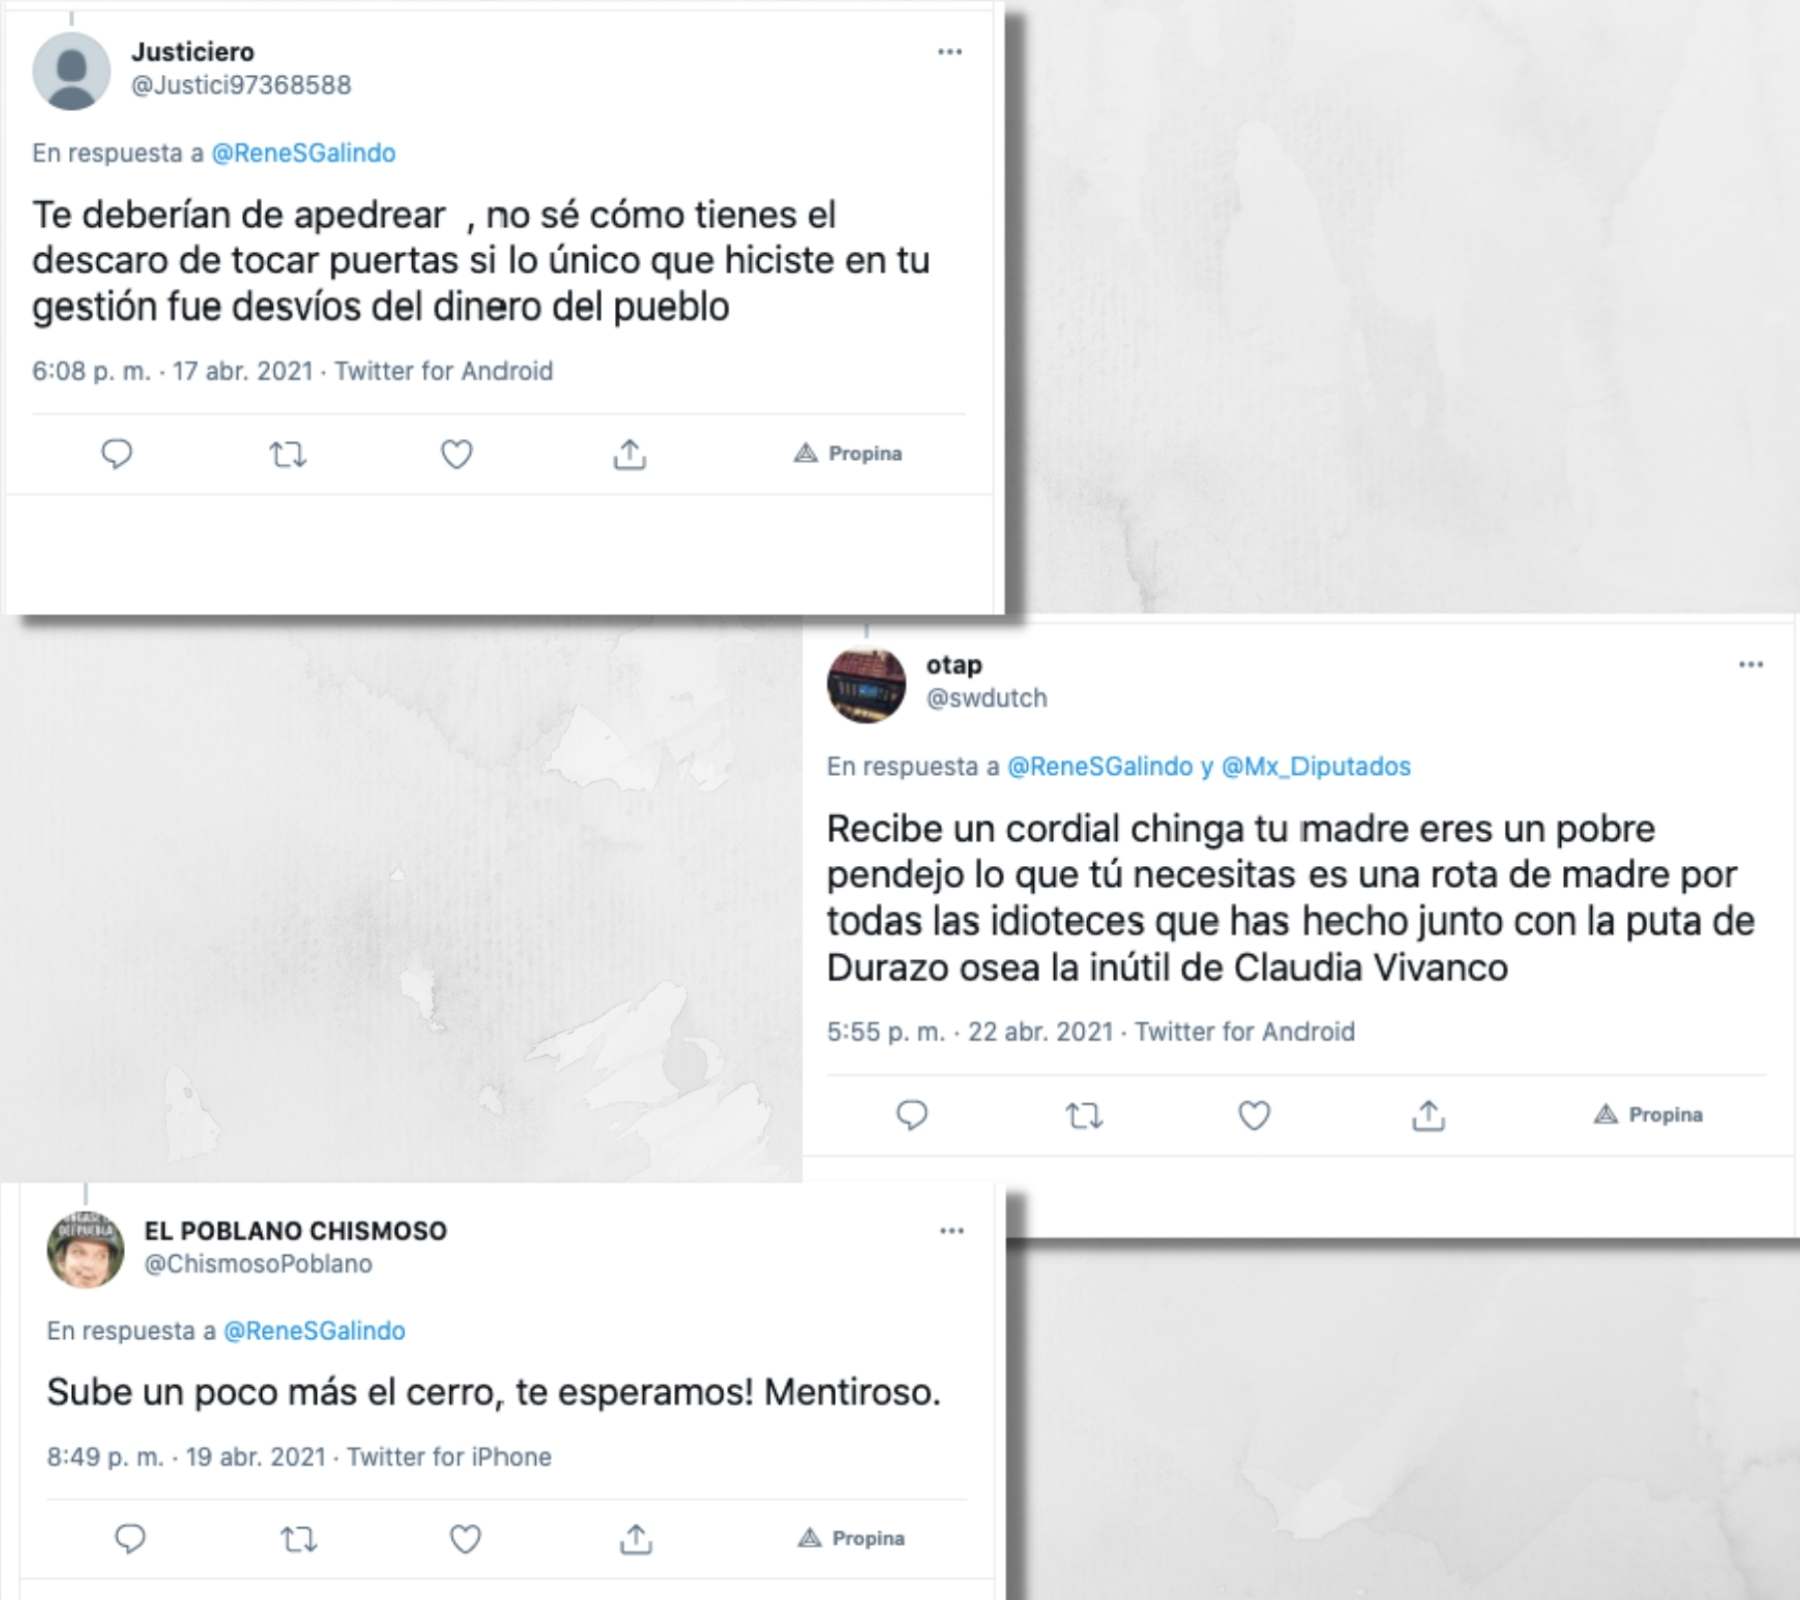 Tuits con amenazas al candidato René Sánchez Galindo